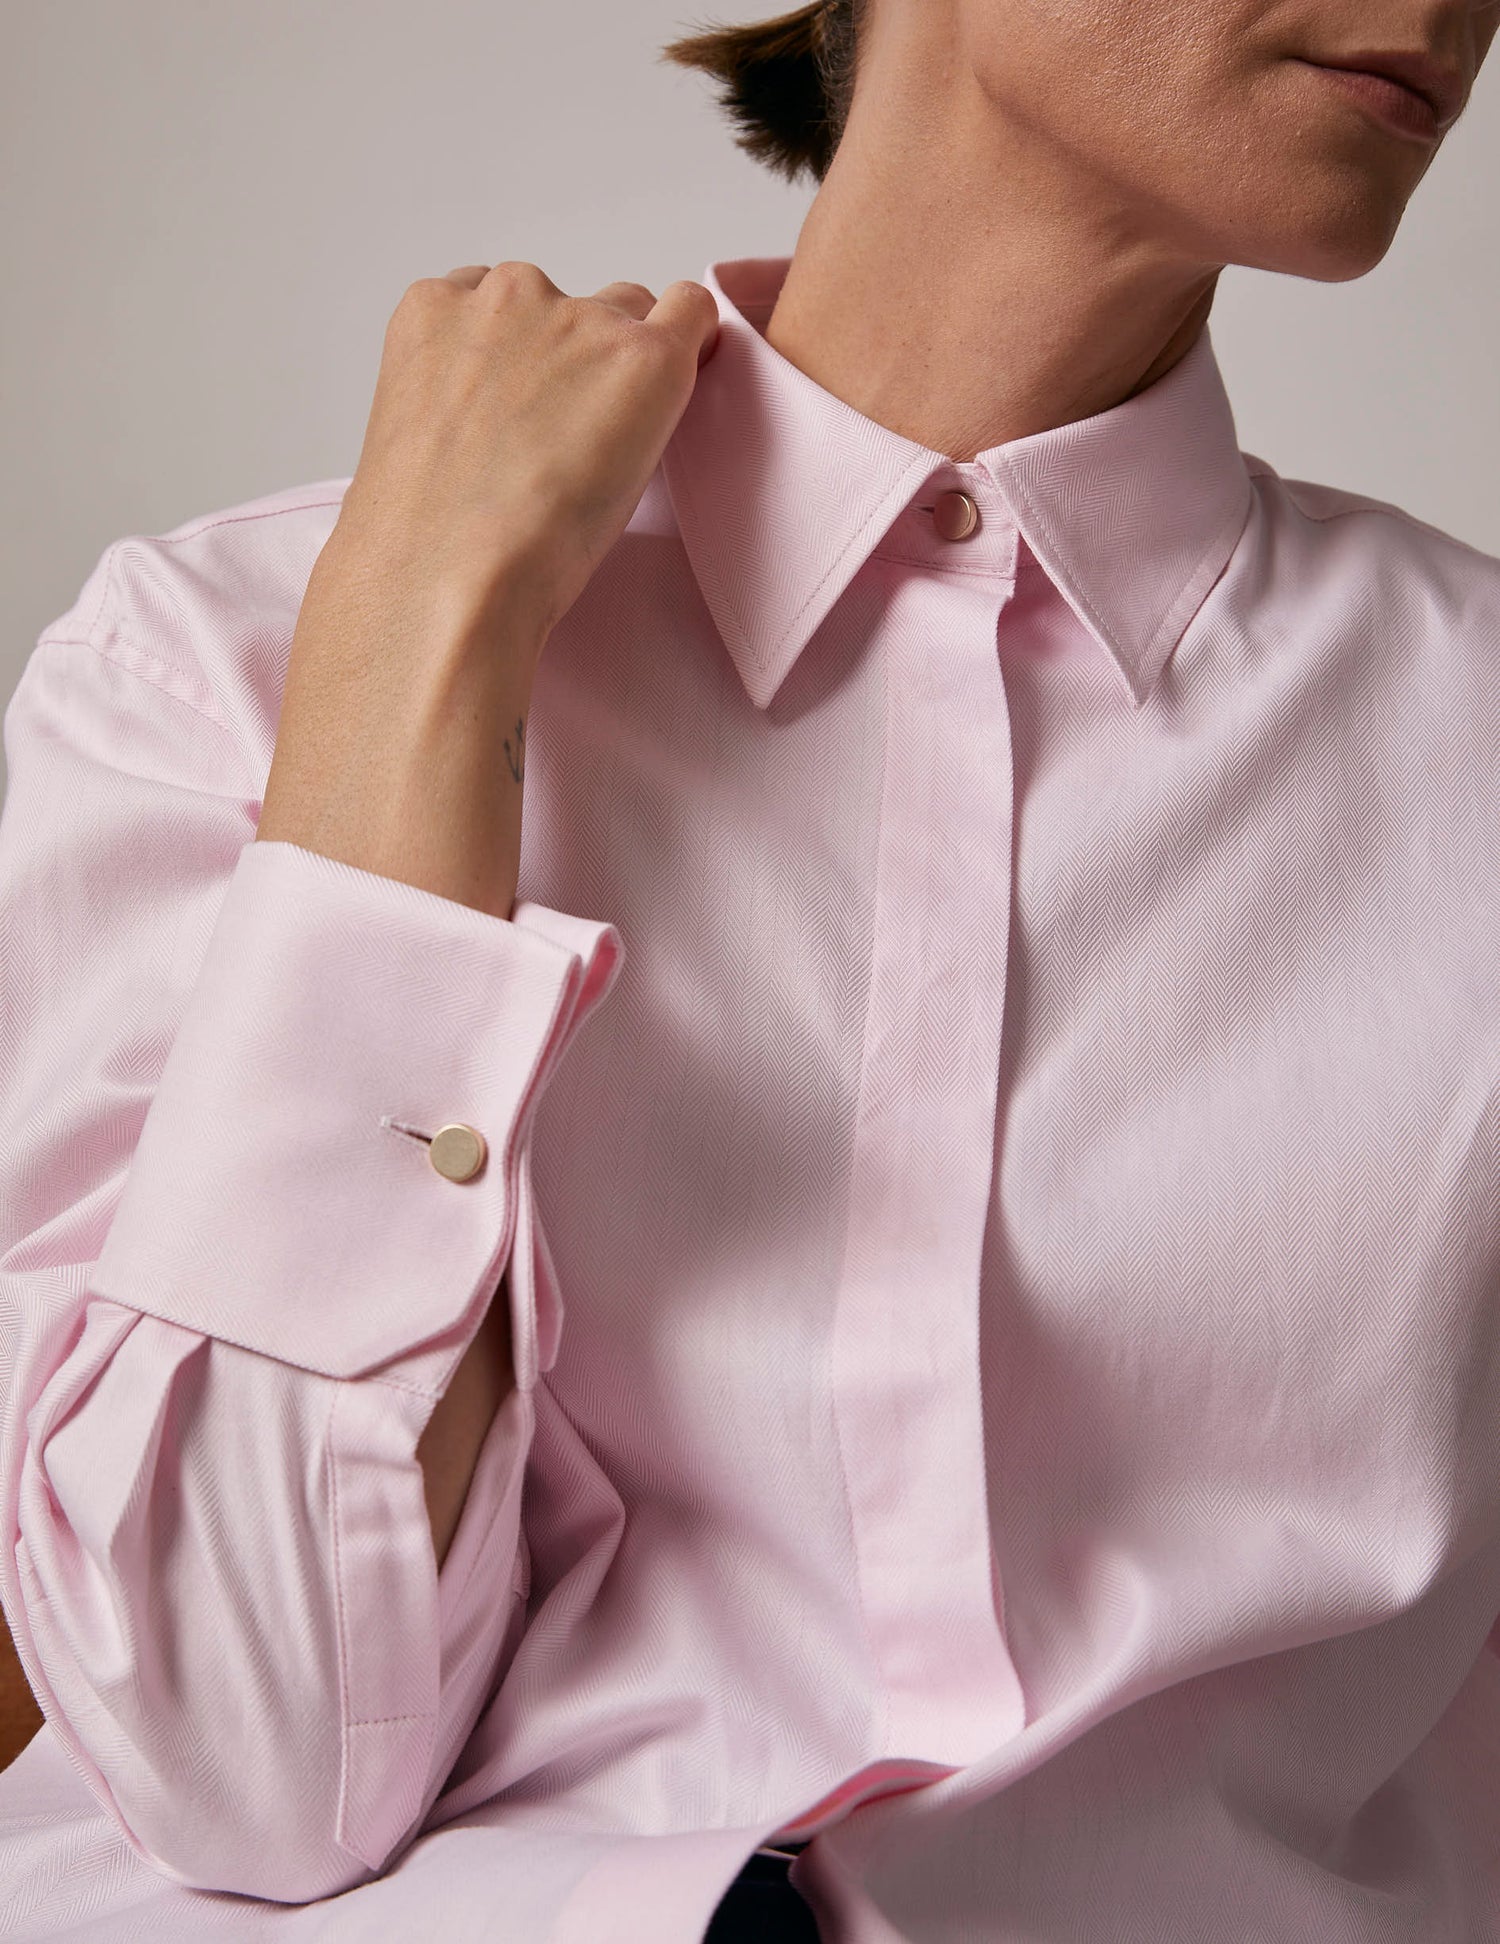 Hillie Hidden button placket pink shirt - Chevron - Shirt Collar - Musketeers Cuffs